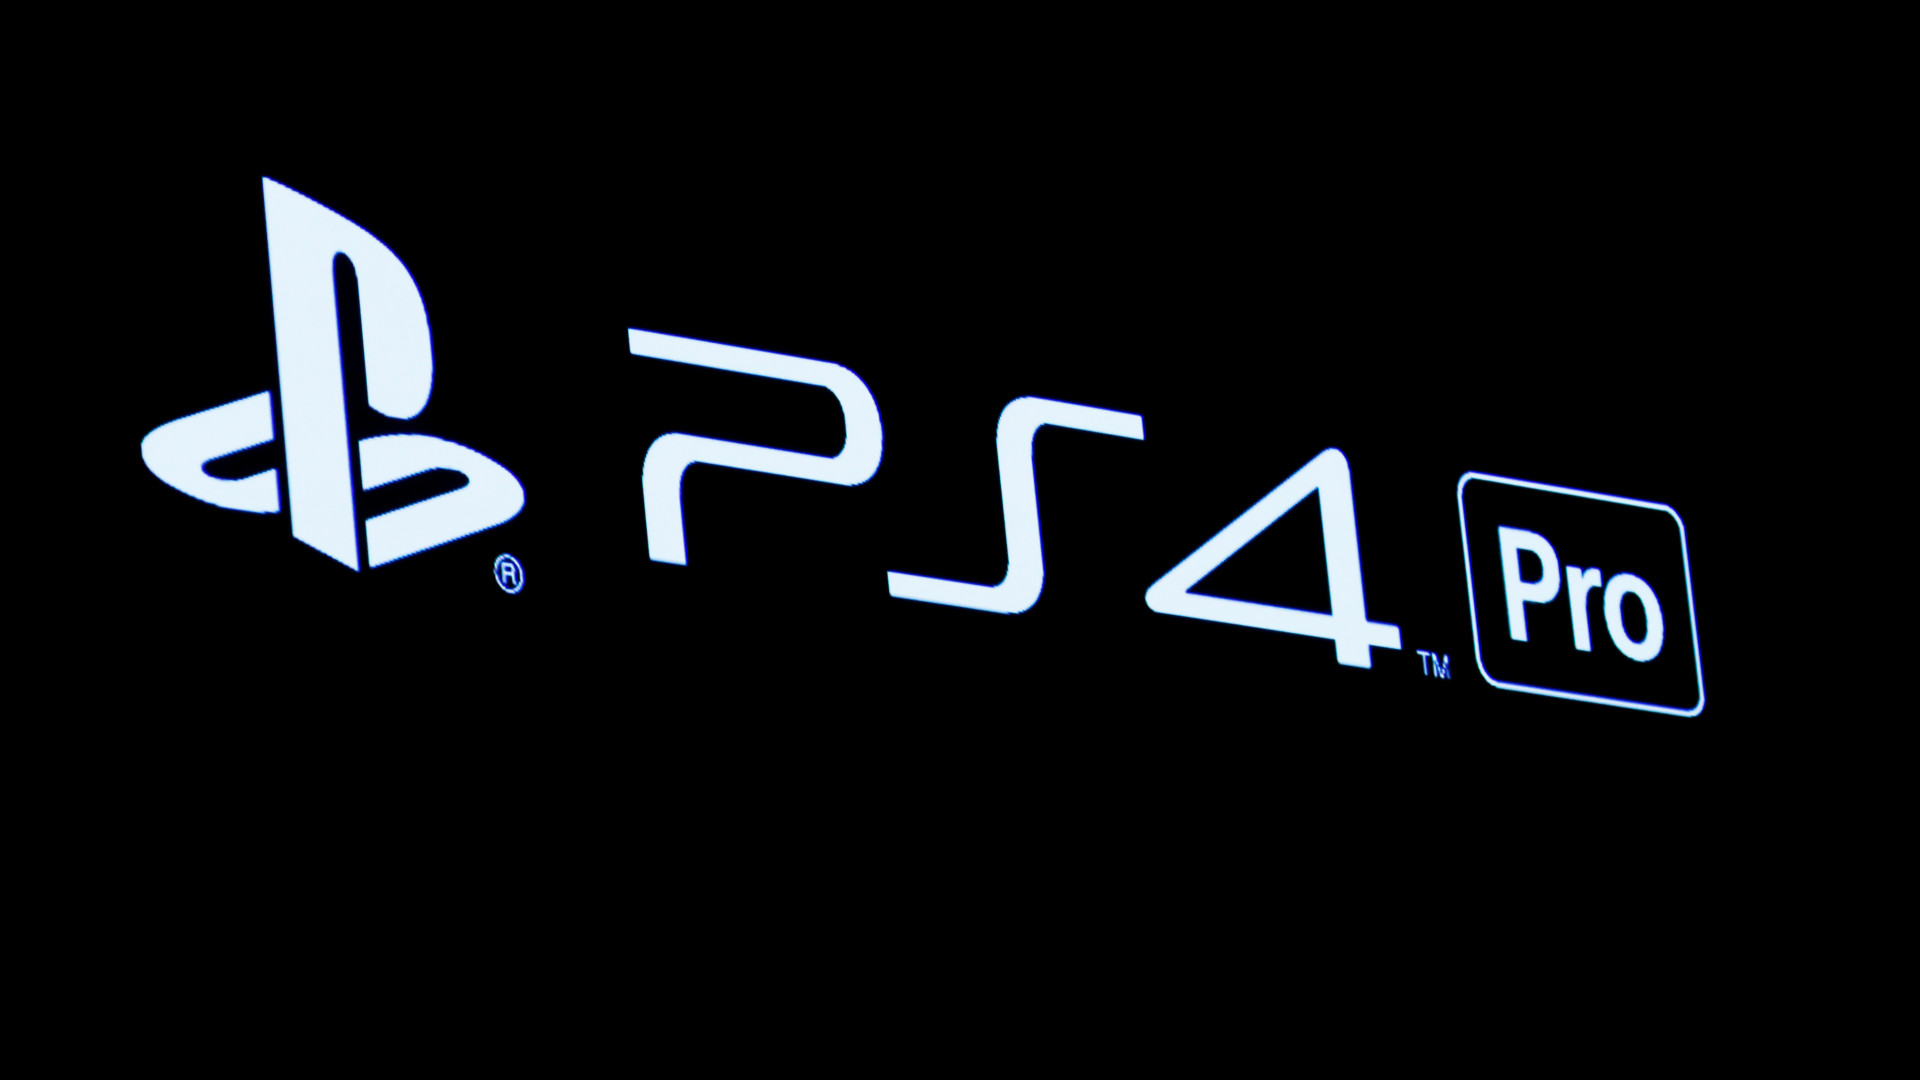 Playstation 4 Pro chega ao mercado brasileiro em fevereiro por R$ 3.000